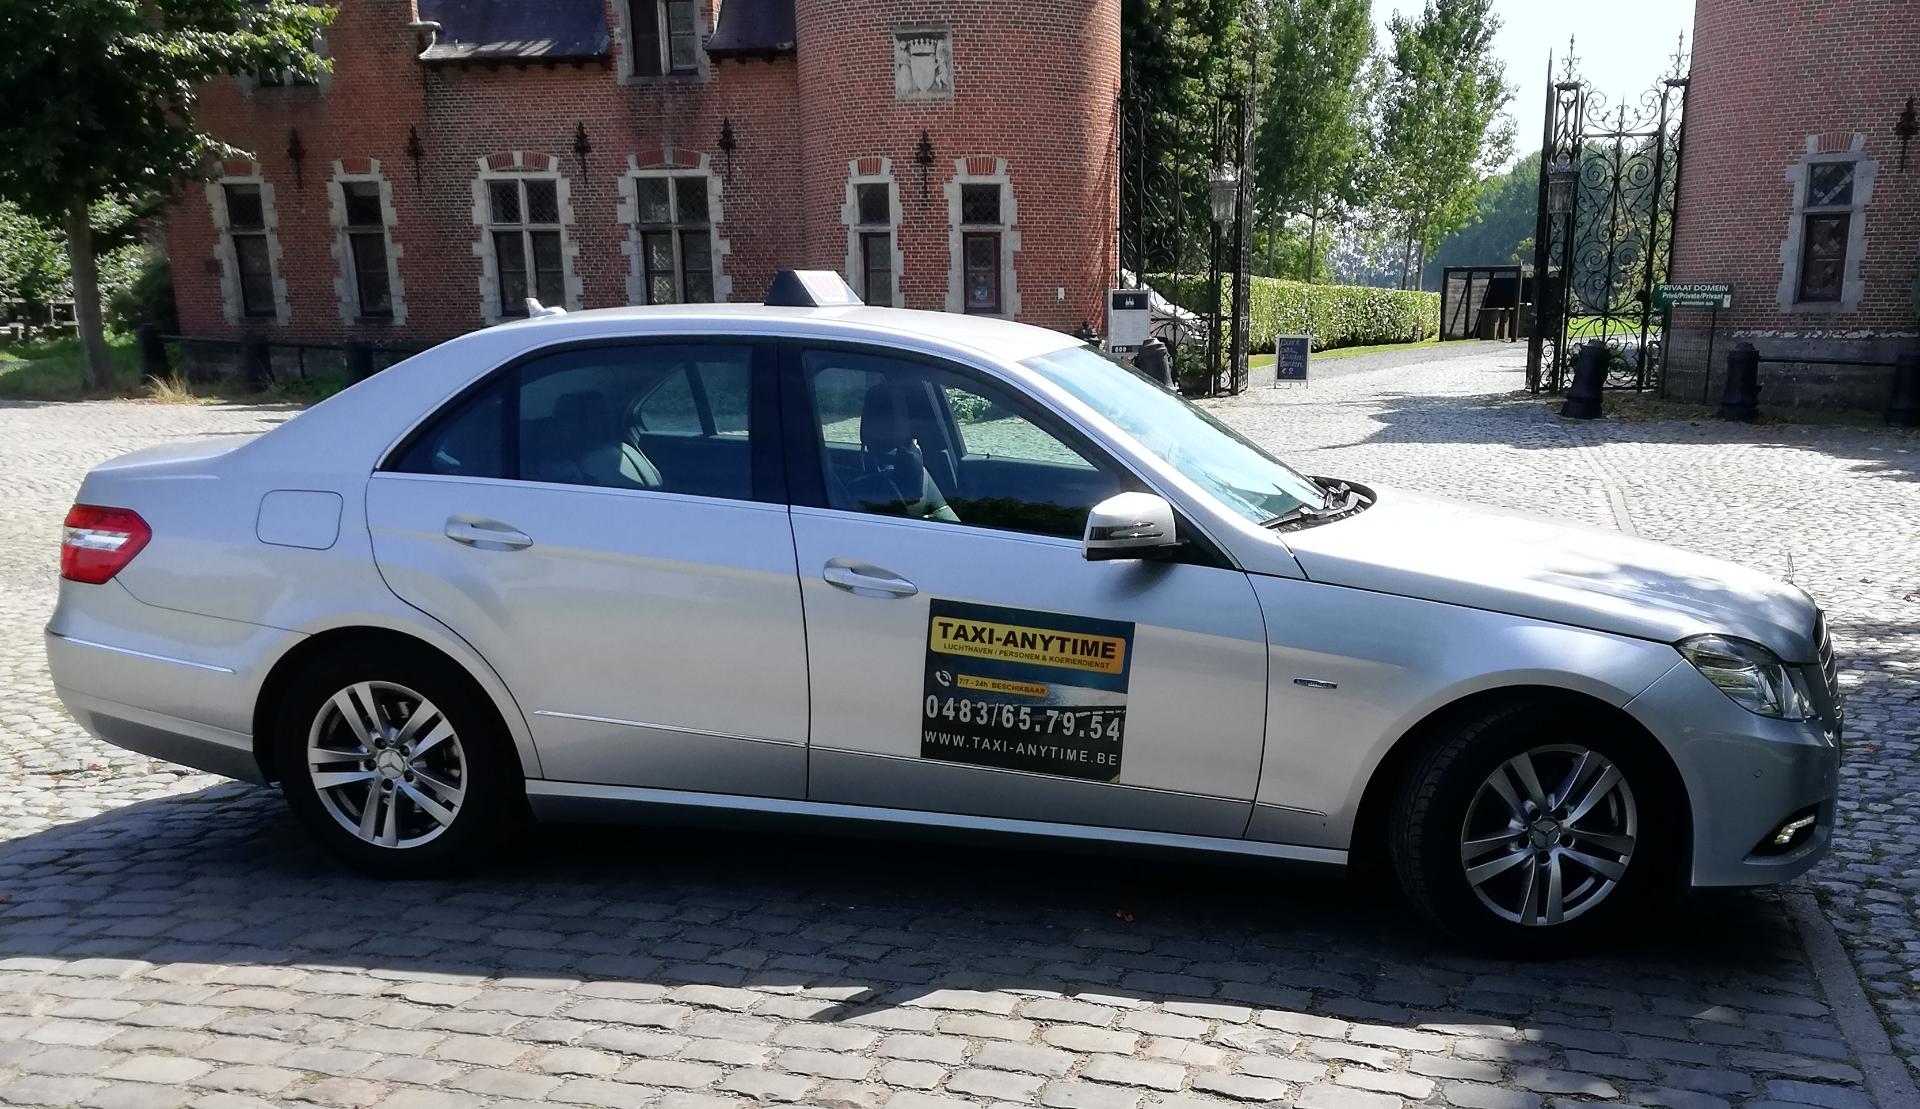 bestelwagenverhuurders Huizingen Taxi-Anytime